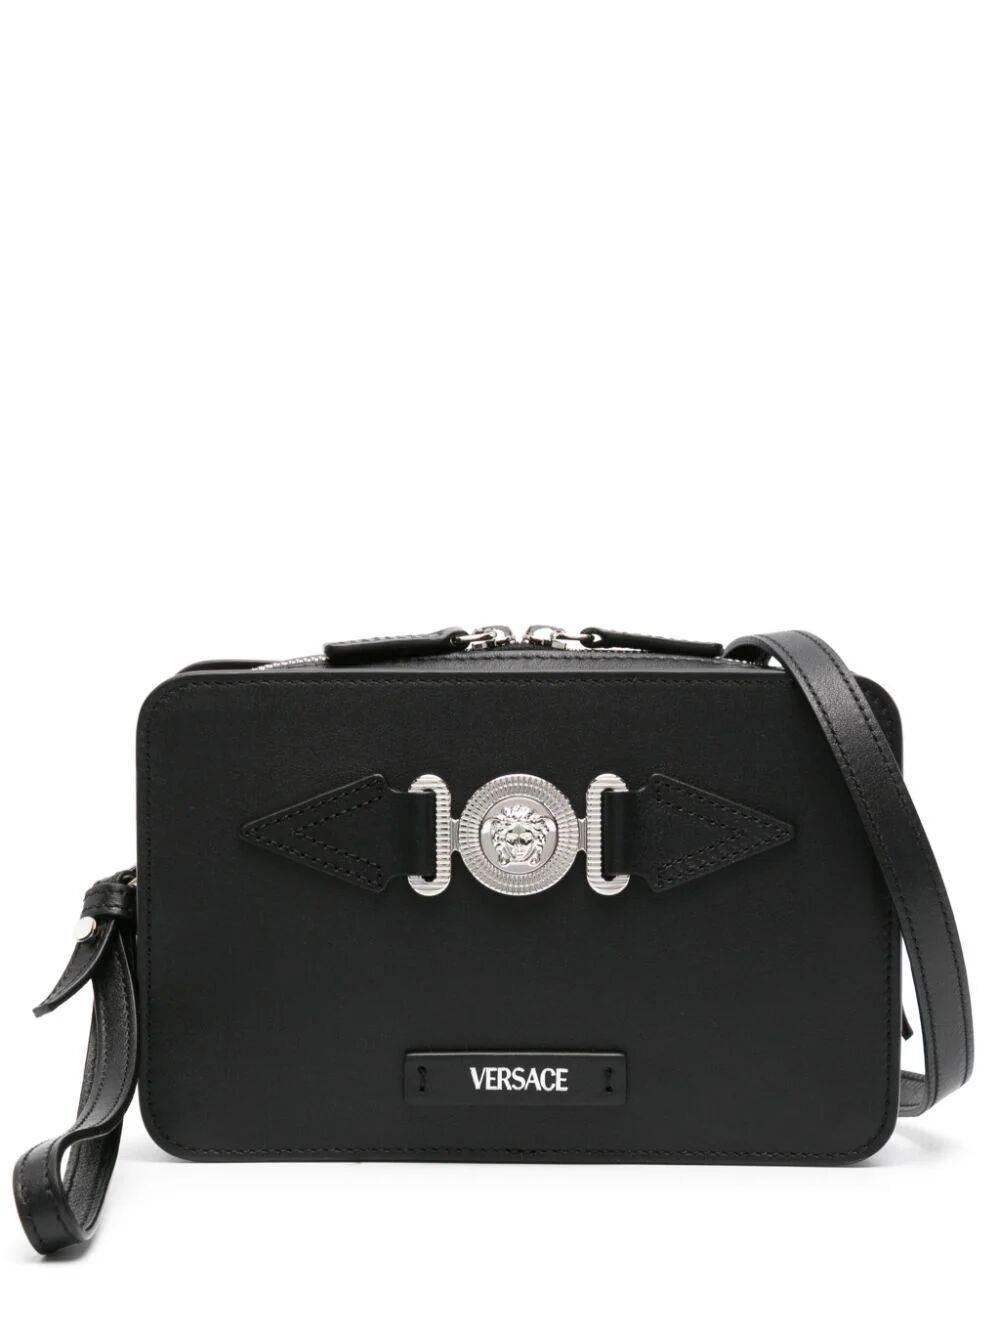 Versace Camera Bag Calf In Black